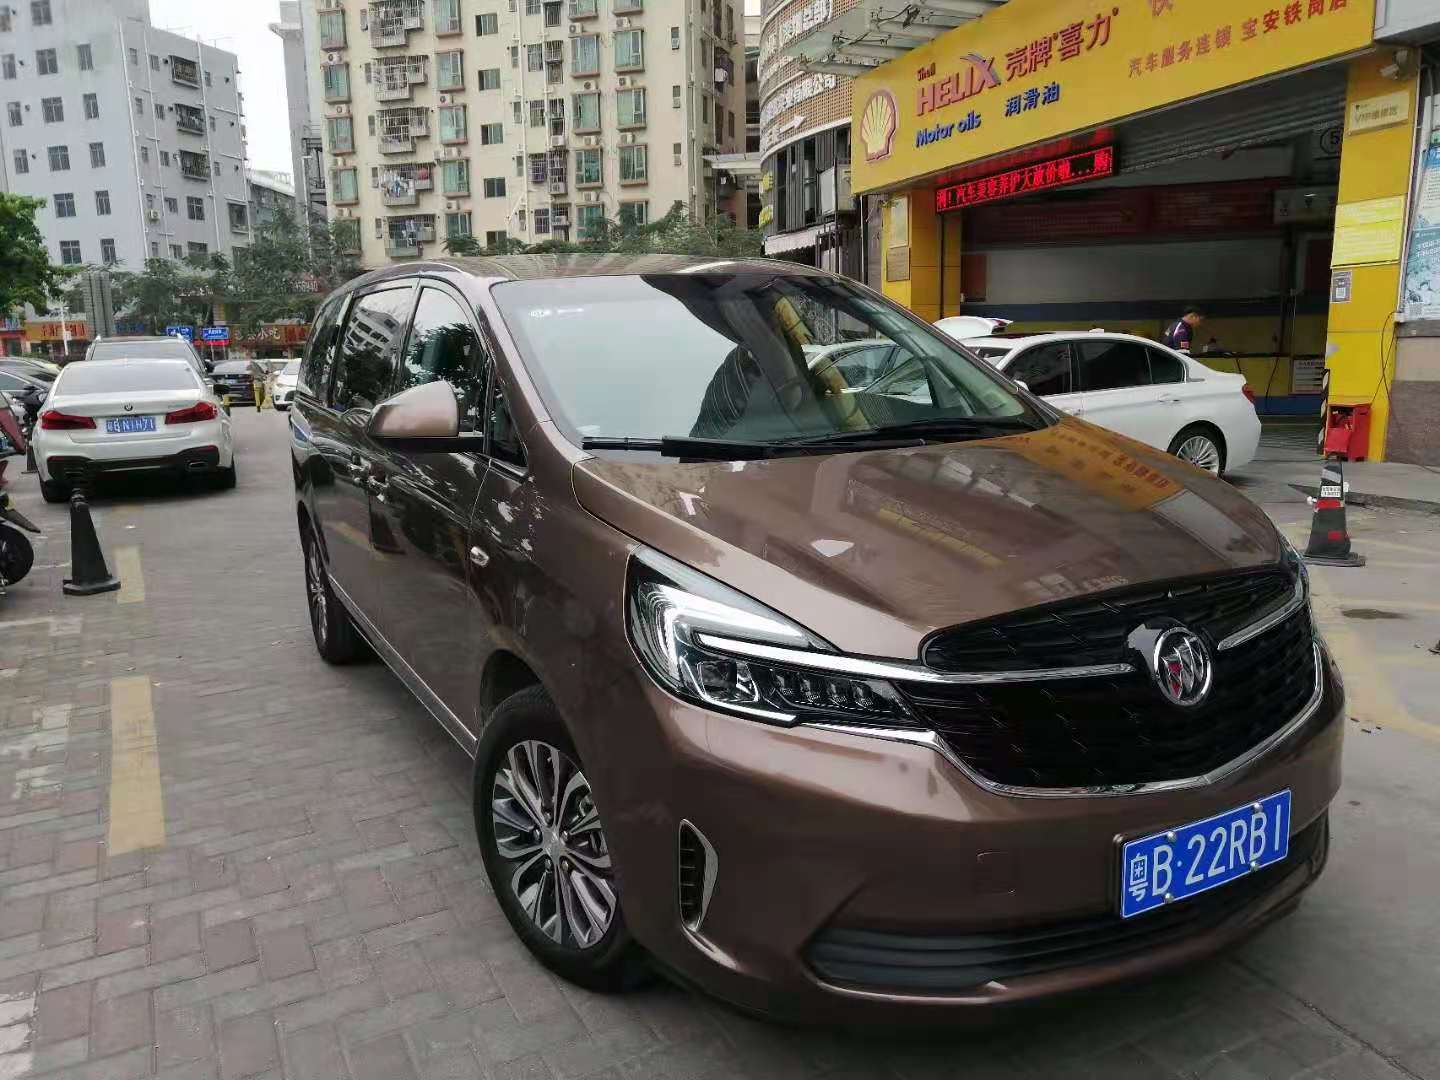 宝安国际会展奔驰商务租赁深圳汽车租赁